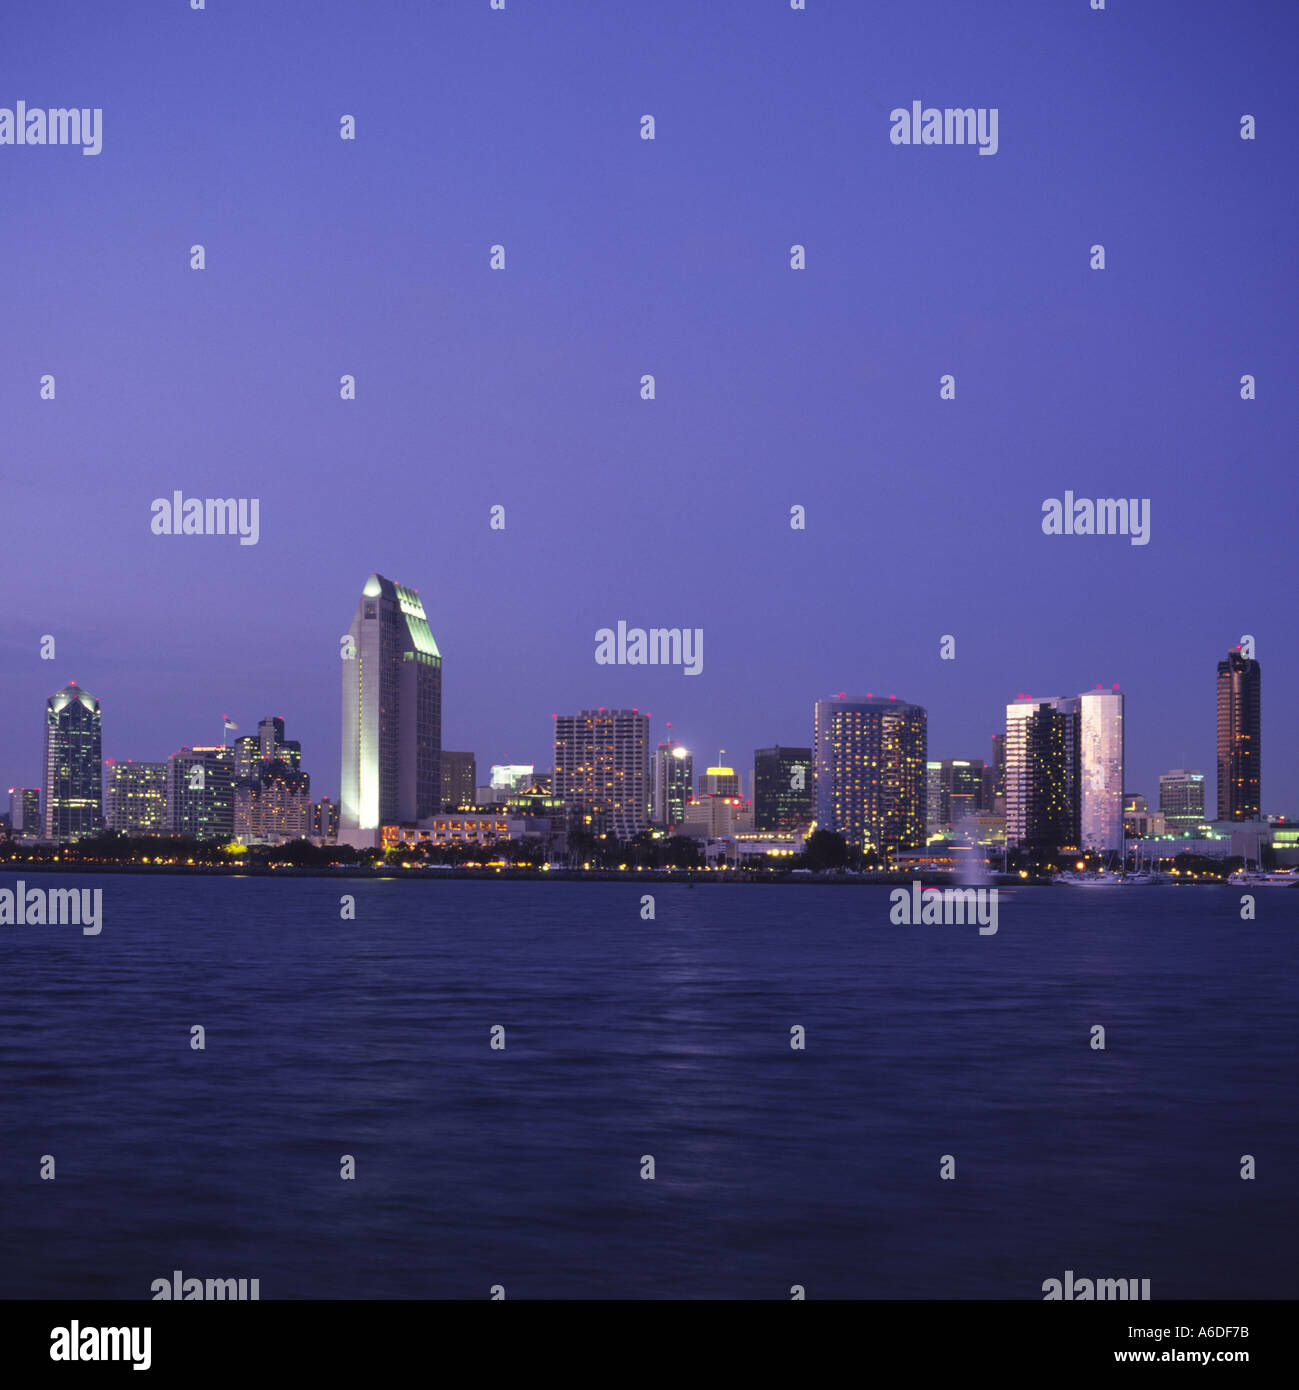 Abenddämmerung Blick auf San Diego mit Citylights von Coronado Island südlichen Kalifornien Vereinigte Staaten von Amerika U S A 2003 Stockfoto